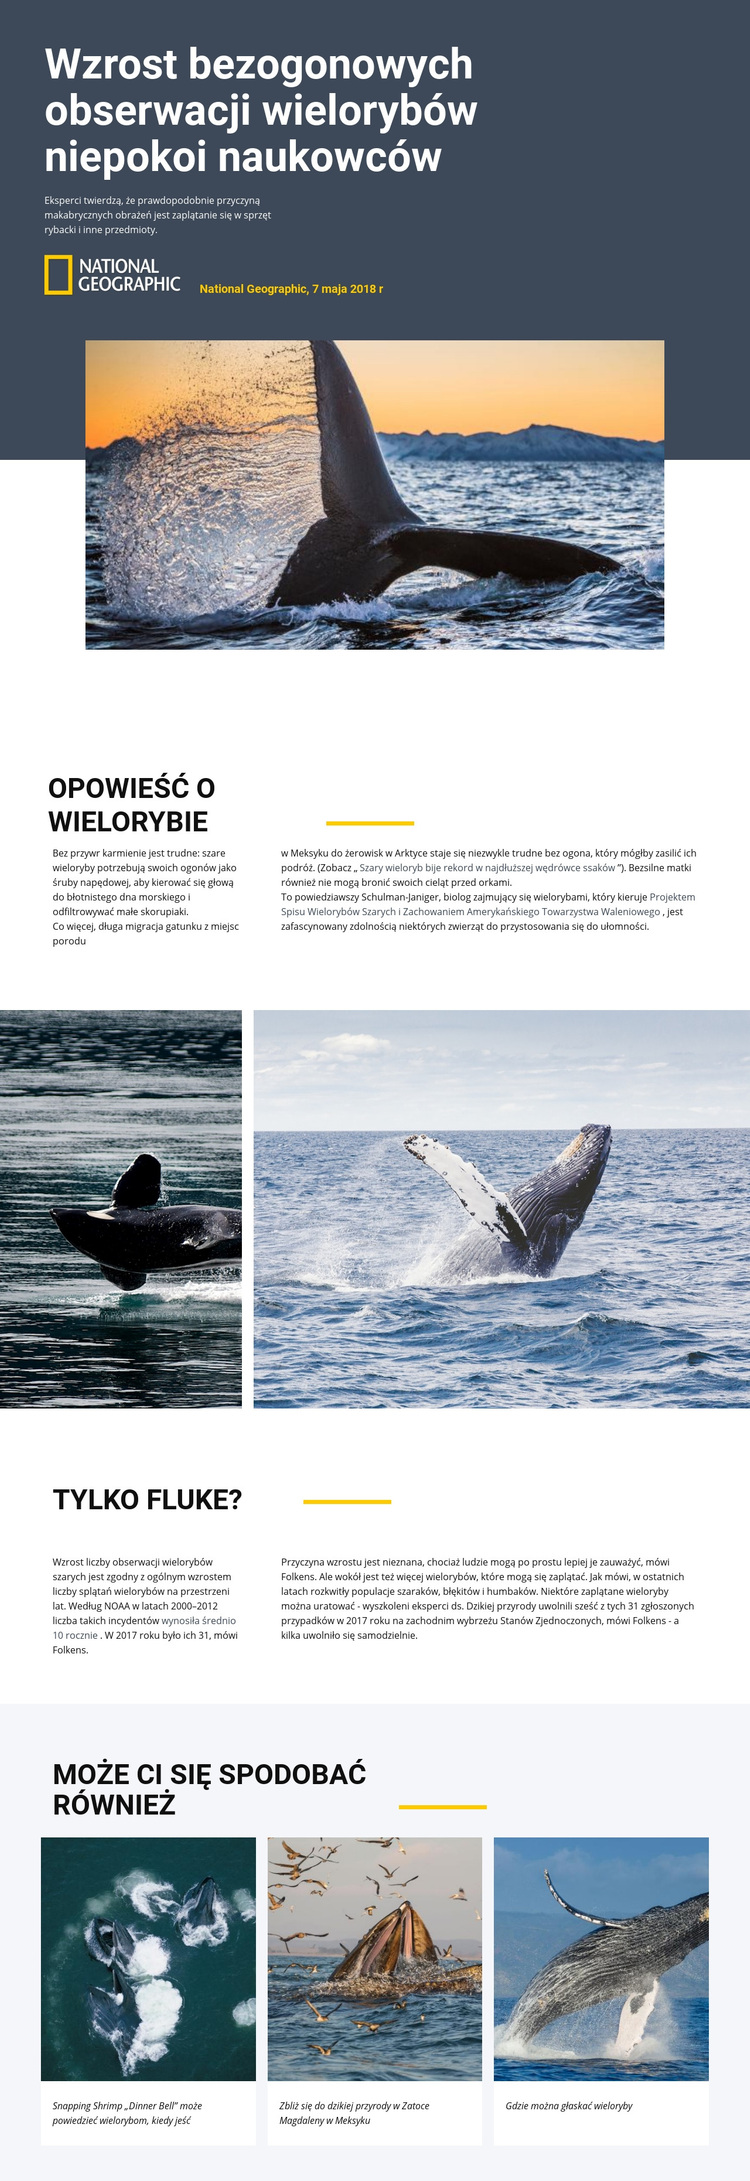 Centrum obserwacji wielorybów Motyw WordPress